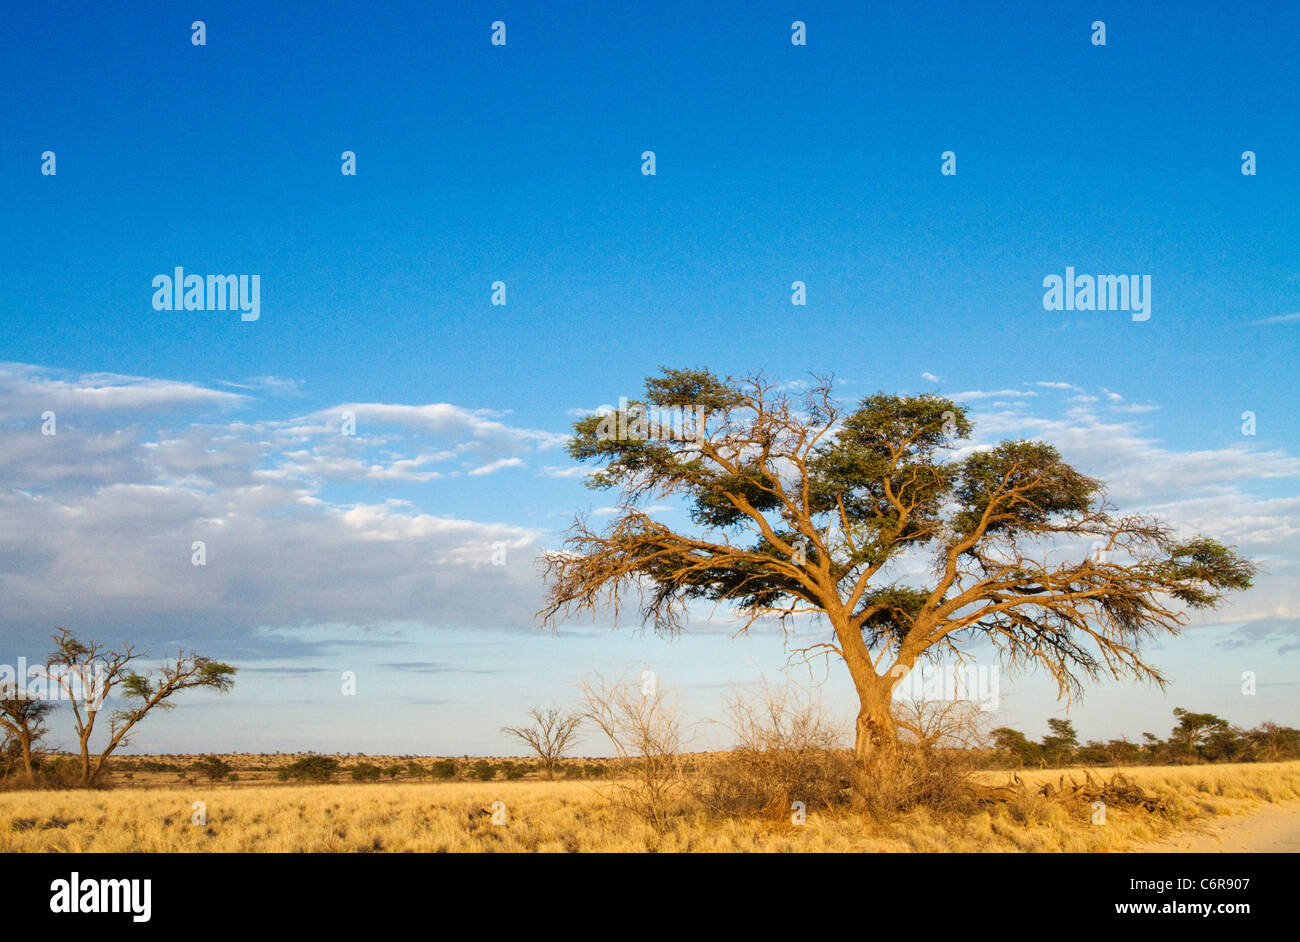 Paesaggio con albero Camelthorn (Acacia erioloba) nuvole e prateria di colore giallo Foto Stock